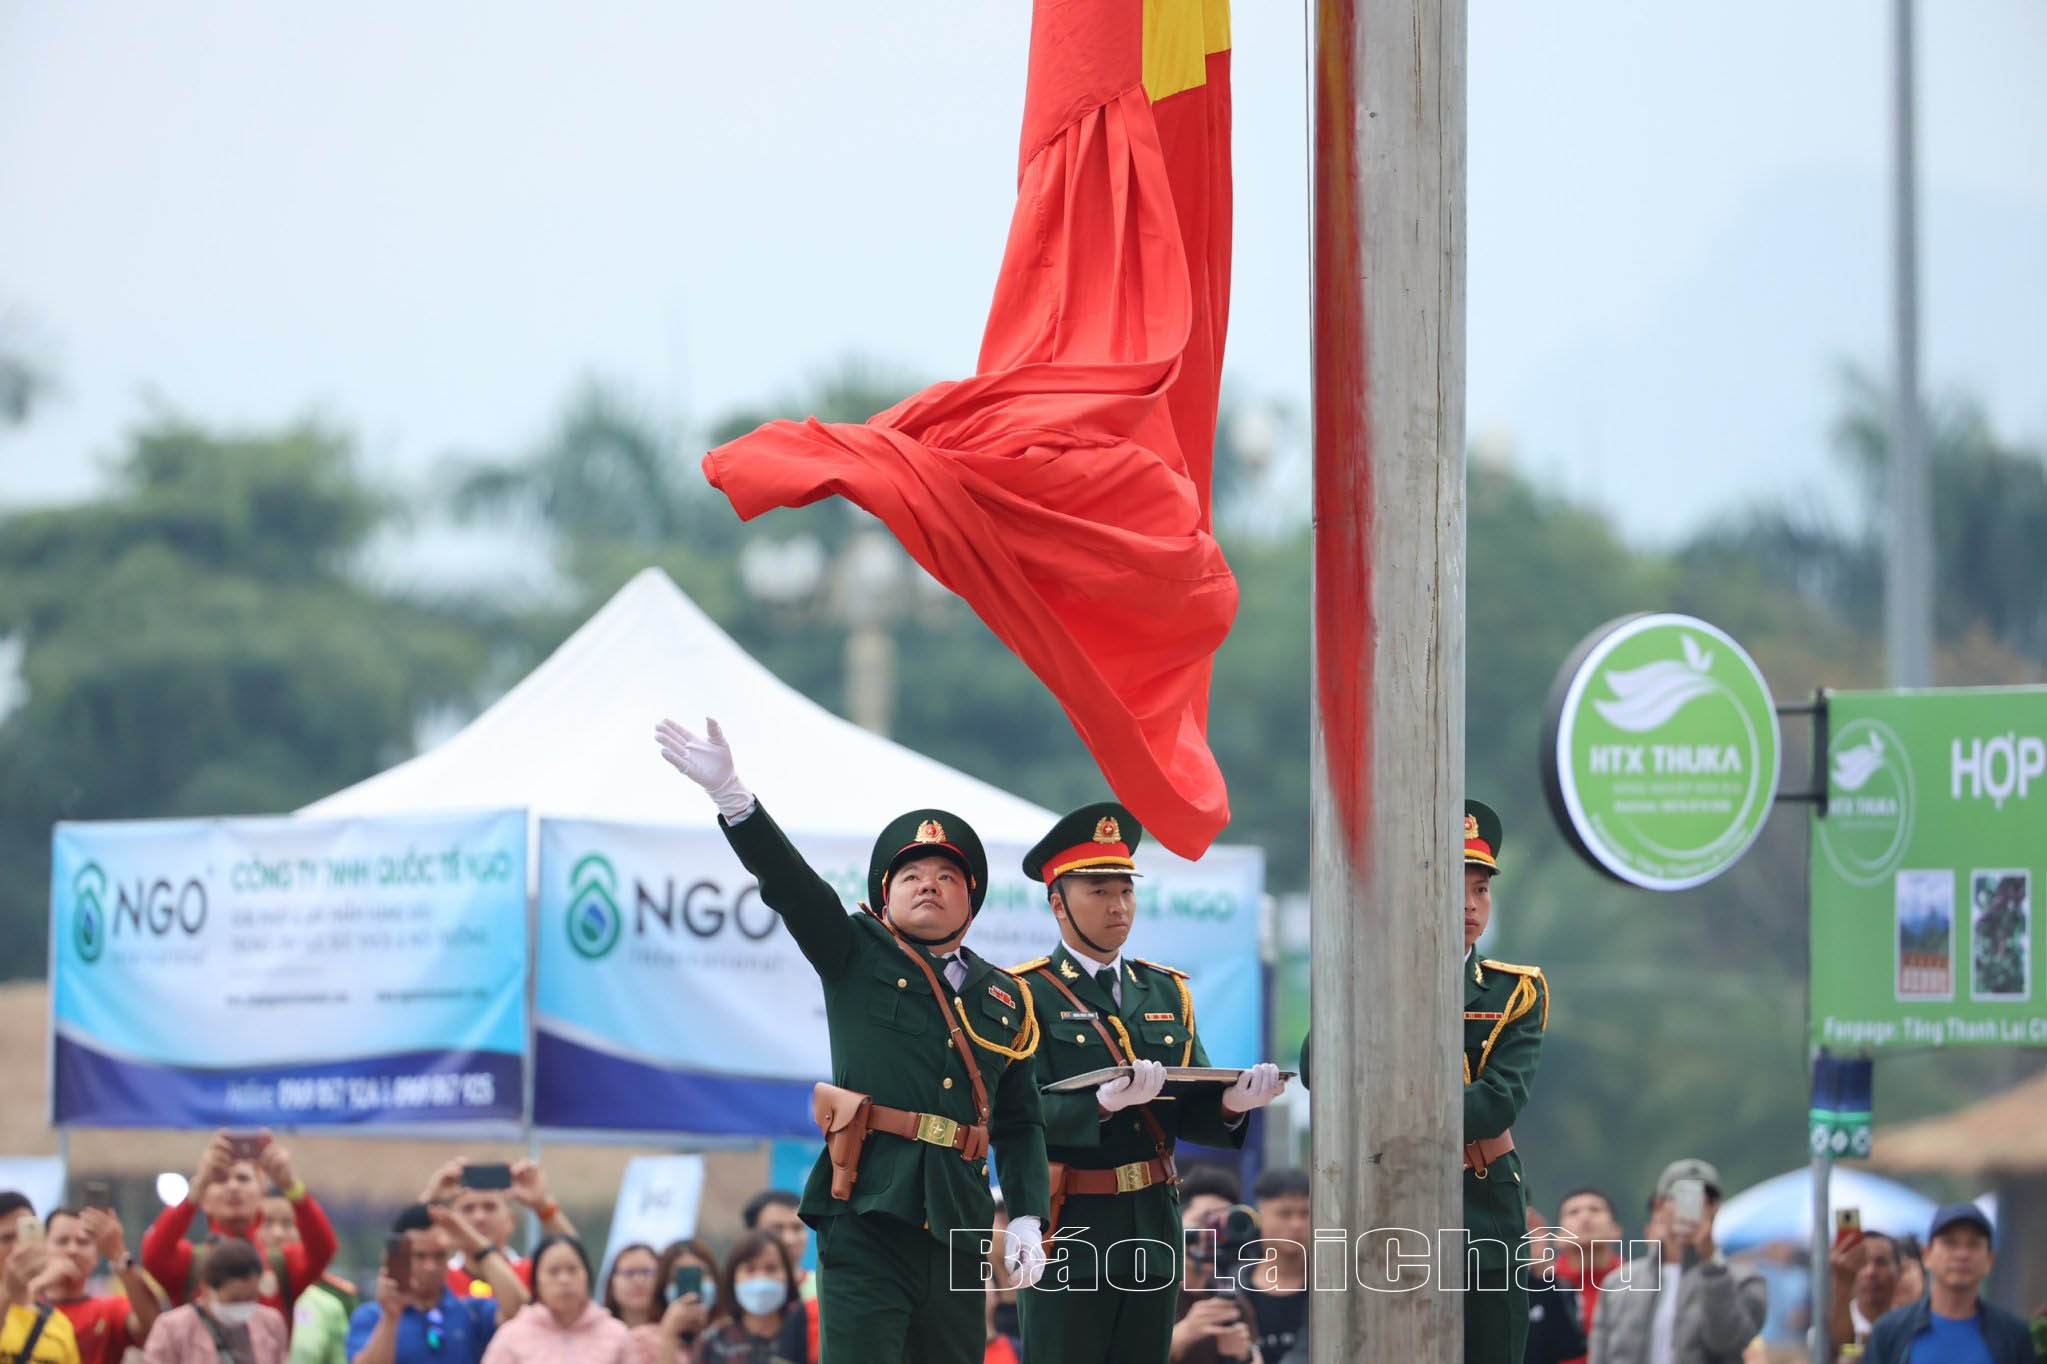 Ngay sau hiệu lệnh chào cờ, tiếng hát Quốc ca Việt Nam vang lên rộn rã, hào hùng, lá cờ Tổ quốc được chiến sỹ đội Hồng kỳ dần thả ra. 